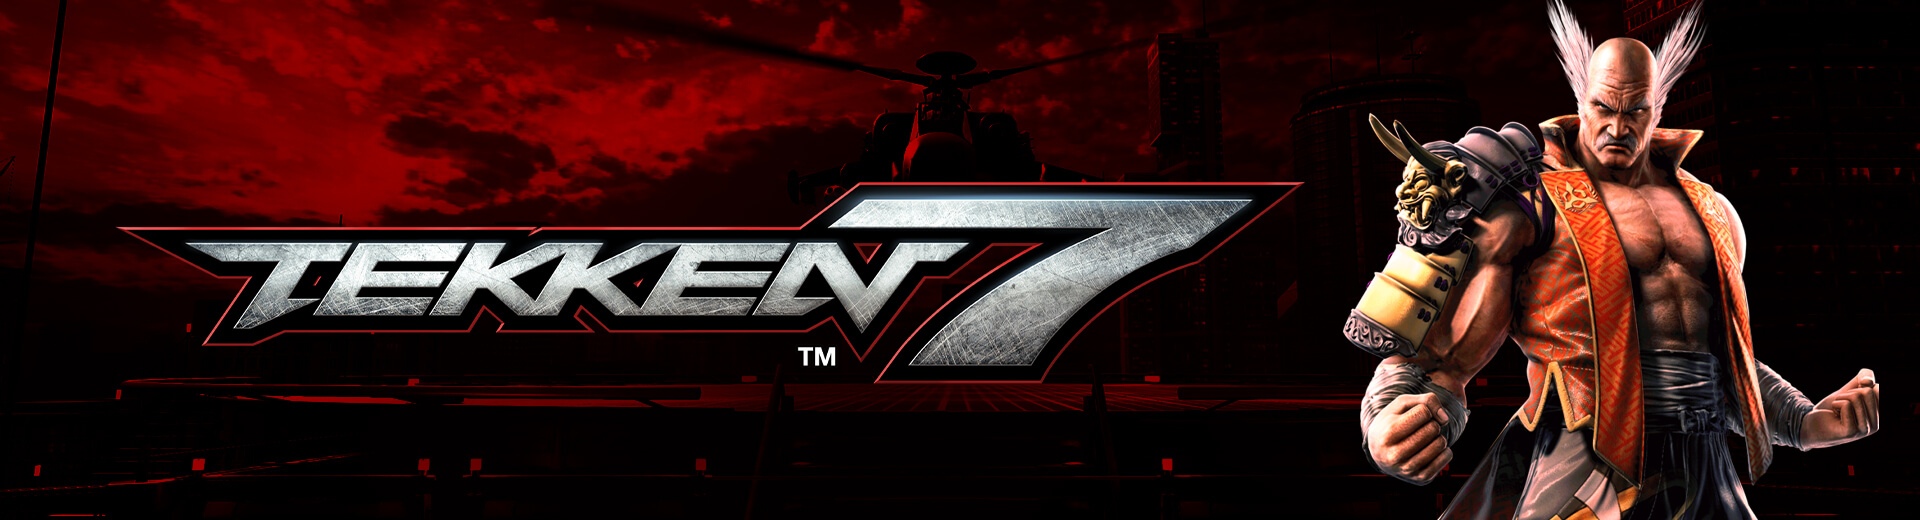 Tekken 7 @ The Cave #5